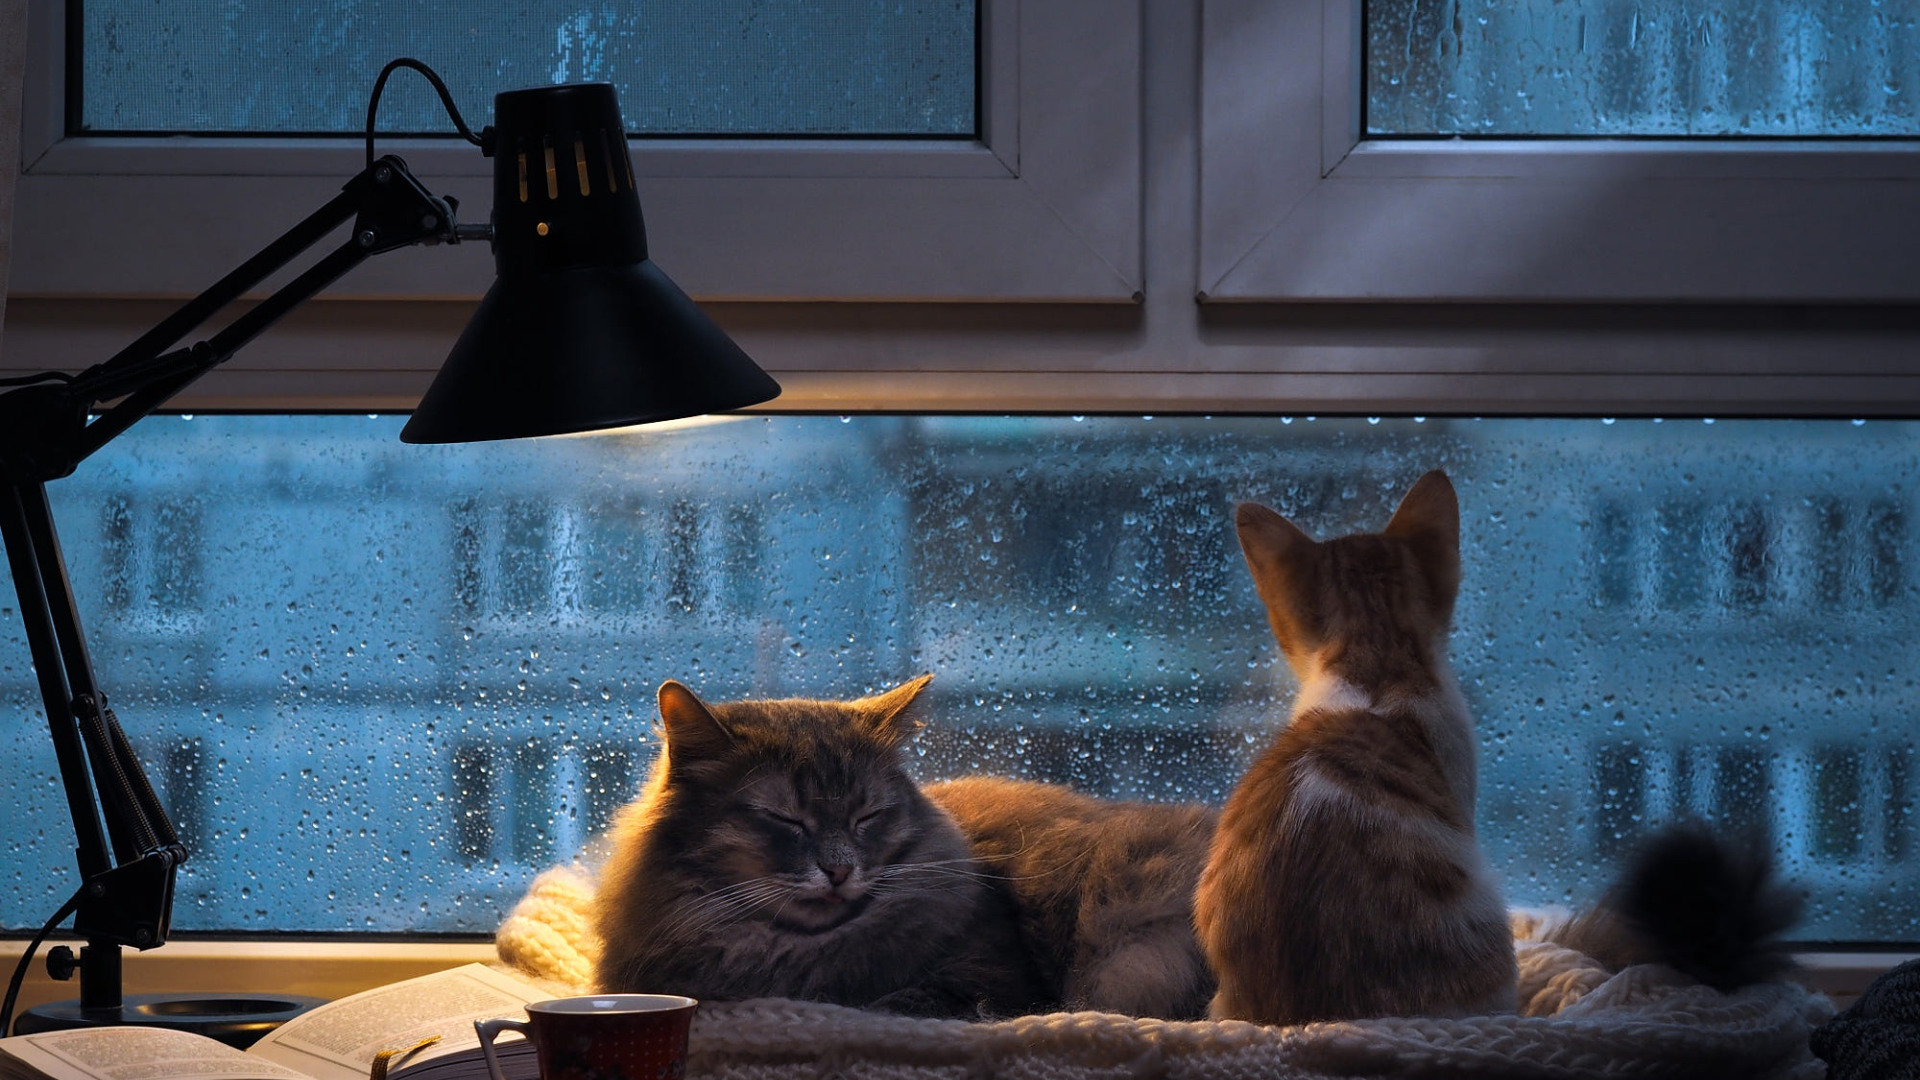 Поставь свет потеплее. Кот на окне. Кот на окне уют. Уютные коты. Уютного вечера.